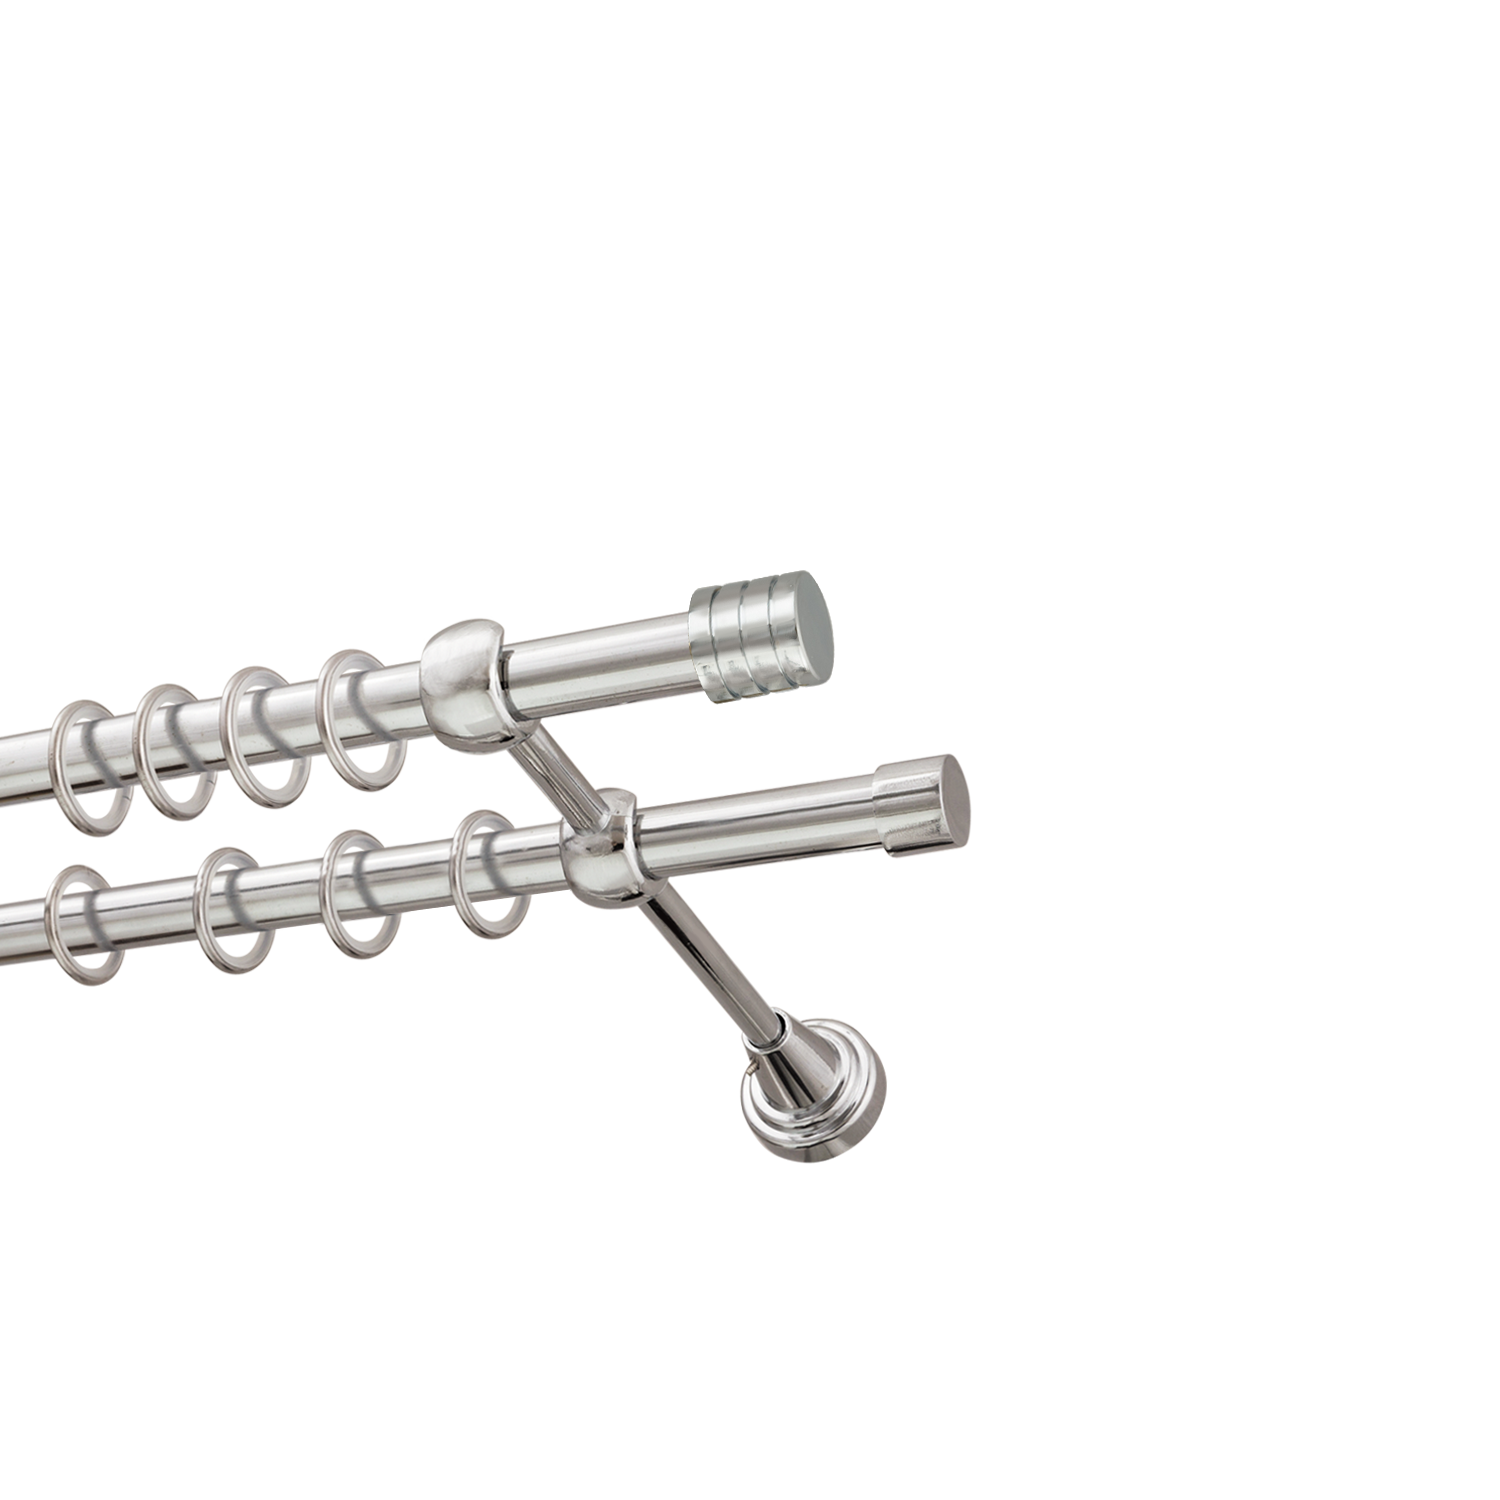 Металлический карниз для штор Подиум, двухрядный 16/16 мм, серебро, гладкая штанга, длина 240 см - фото Wikidecor.ru